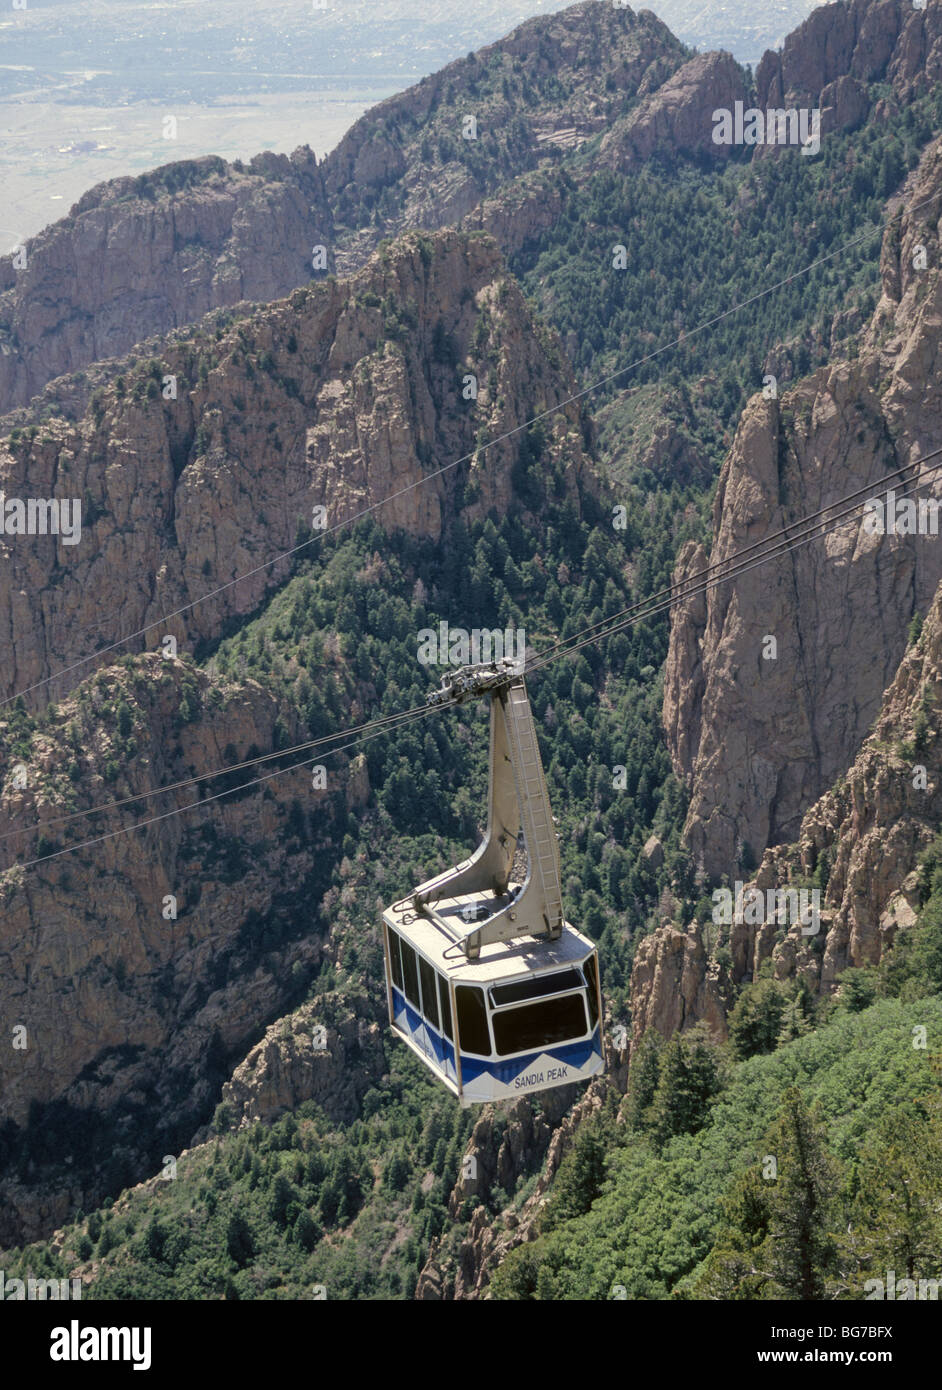 A gondola on the Sandia Peak Tramway, in the Sandia Mountains near Albuquerque, New Mexico Stock Photo